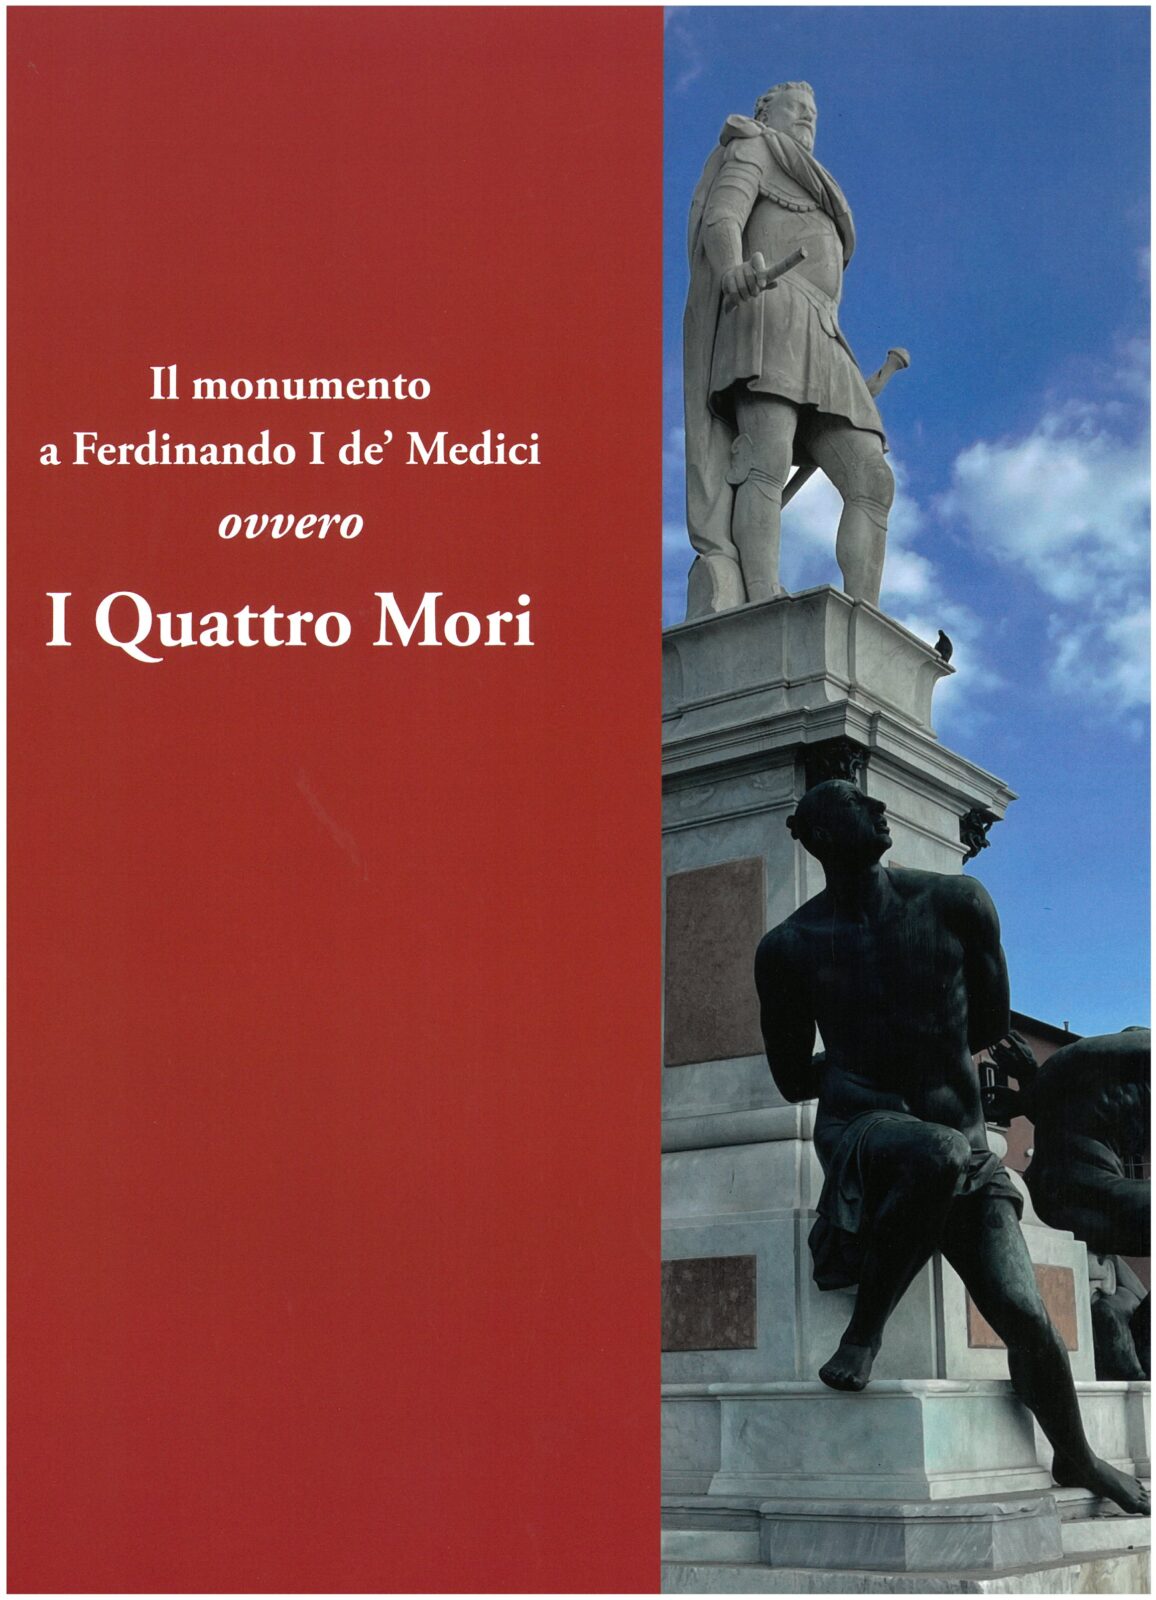 Il monumento a Ferdinando I de’Medici ovvero I Quattro Mori